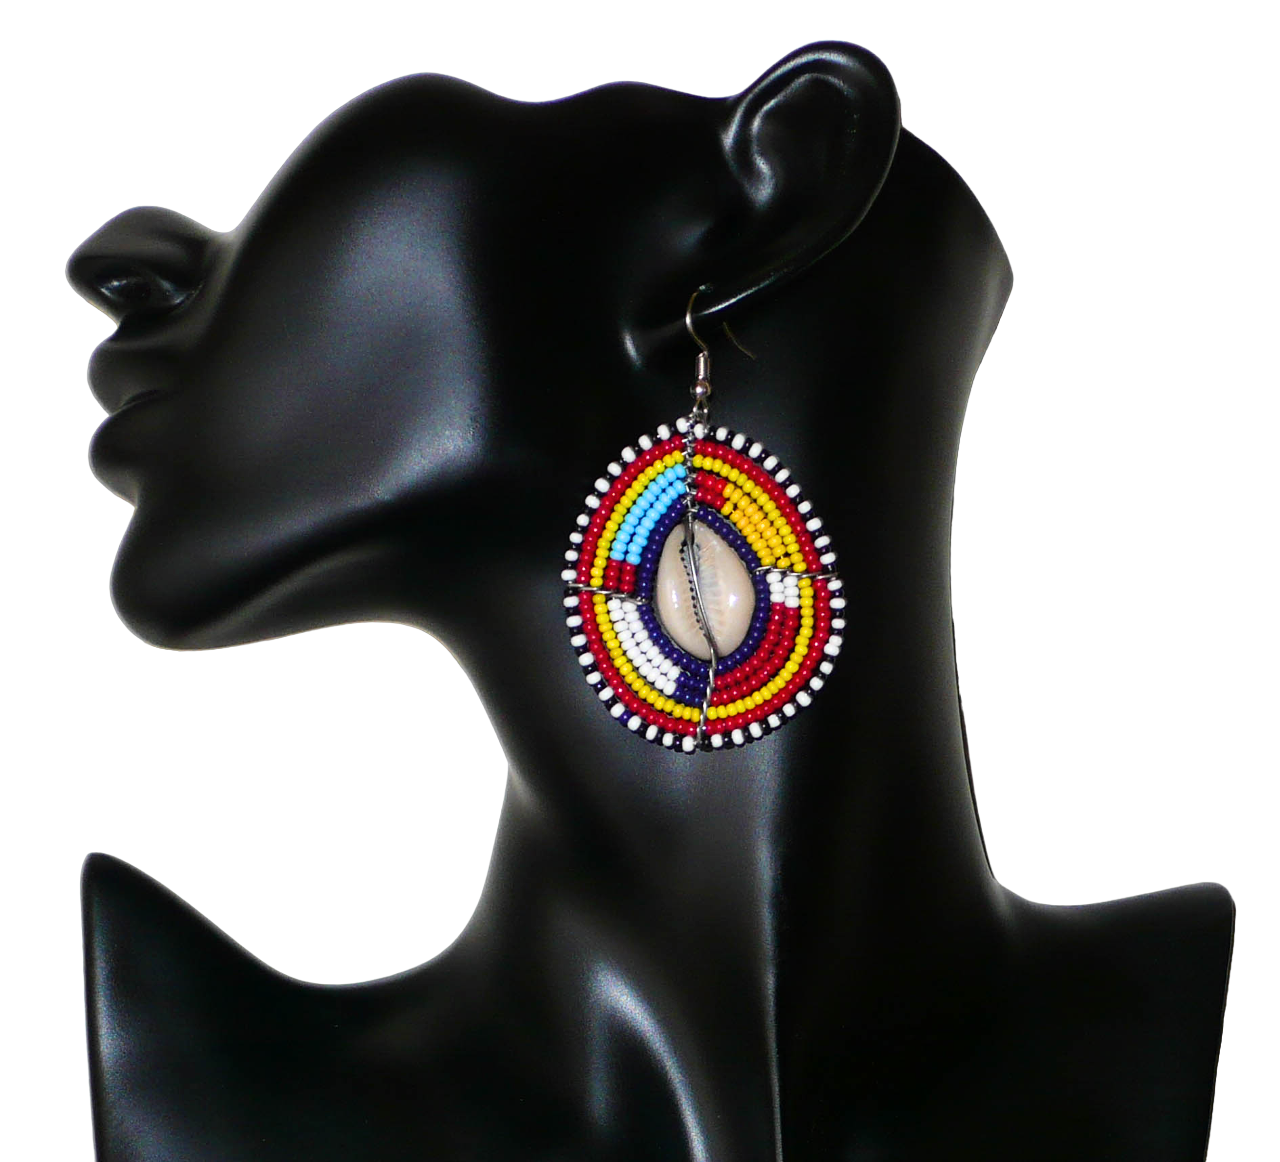 Boucles d'oreilles africaines traditionnelles aux couleurs et motifs ethniques Massai. Elles se composent de perles de rocaille multicolores enfilées sur des fils de fer montés en forme de boucliers Massai ; des coquillages sont incrustés en leur centre. Elles mesurent 7 cm de long et 4 cm de large et se portent avec des crochets en acier inoxydable sur des oreilles percées.